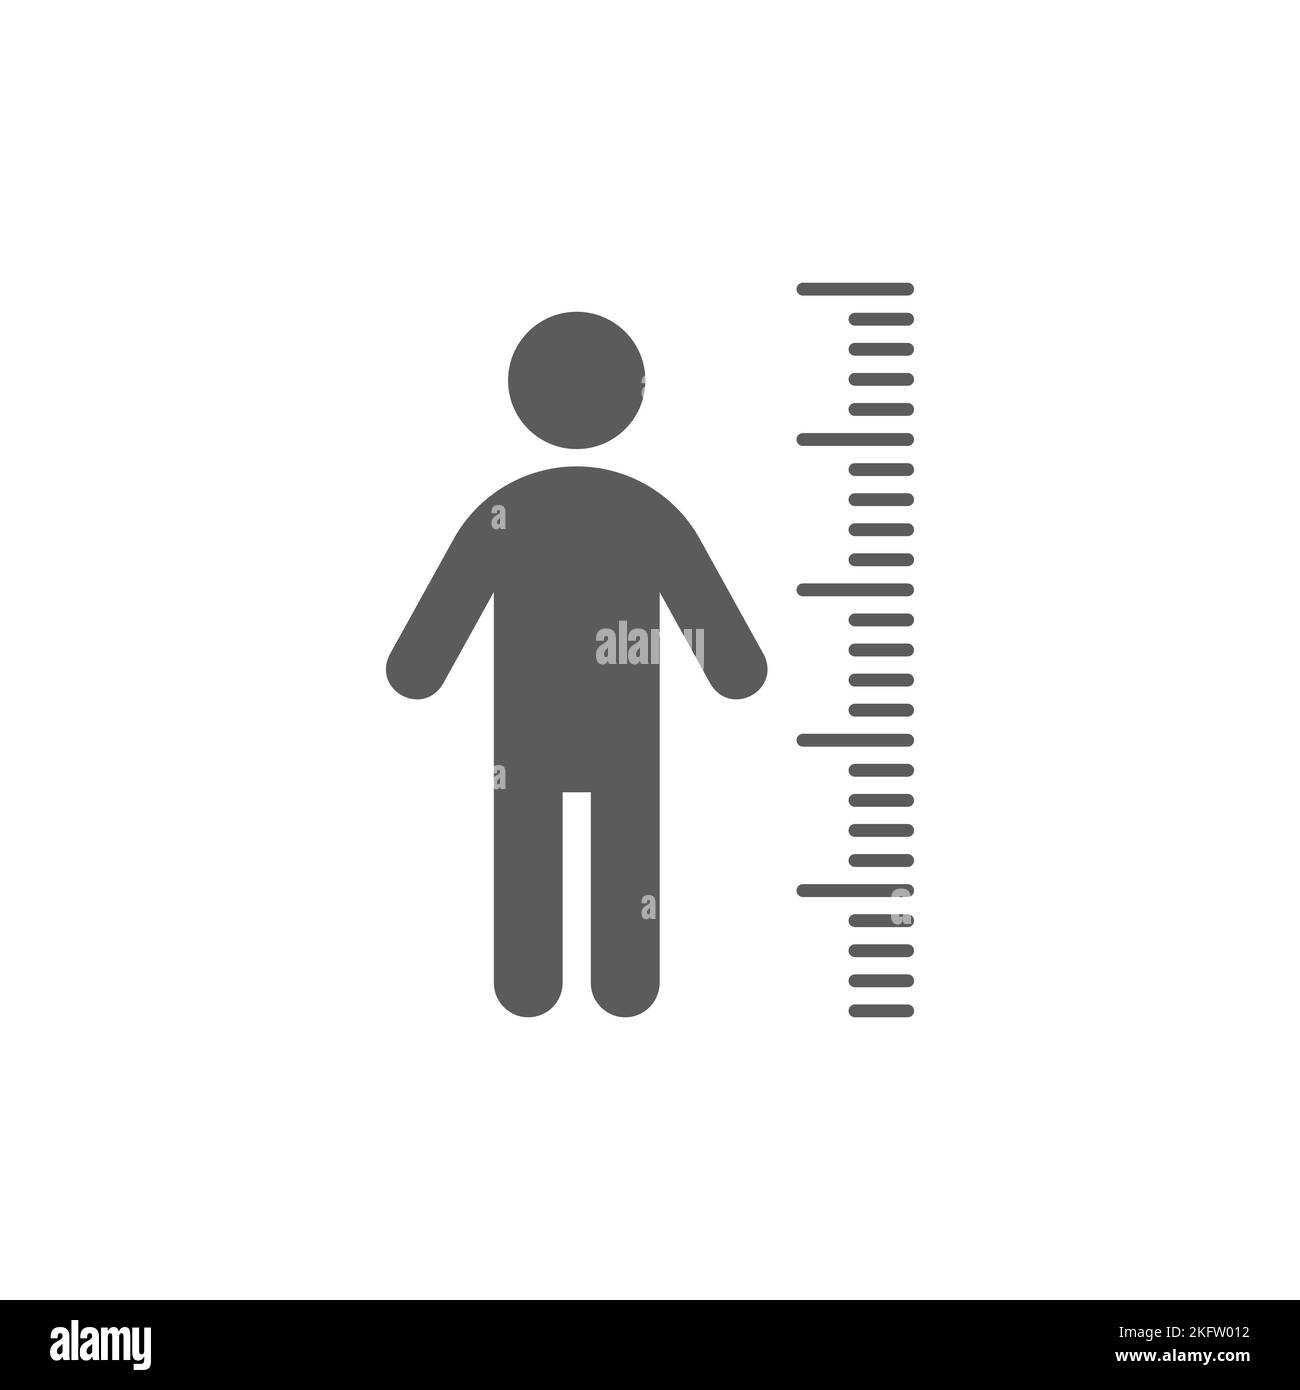 Misura dell'altezza e icona di un vettore uomo nero. Scala di misurazione e simbolo di una persona riempita. Illustrazione Vettoriale